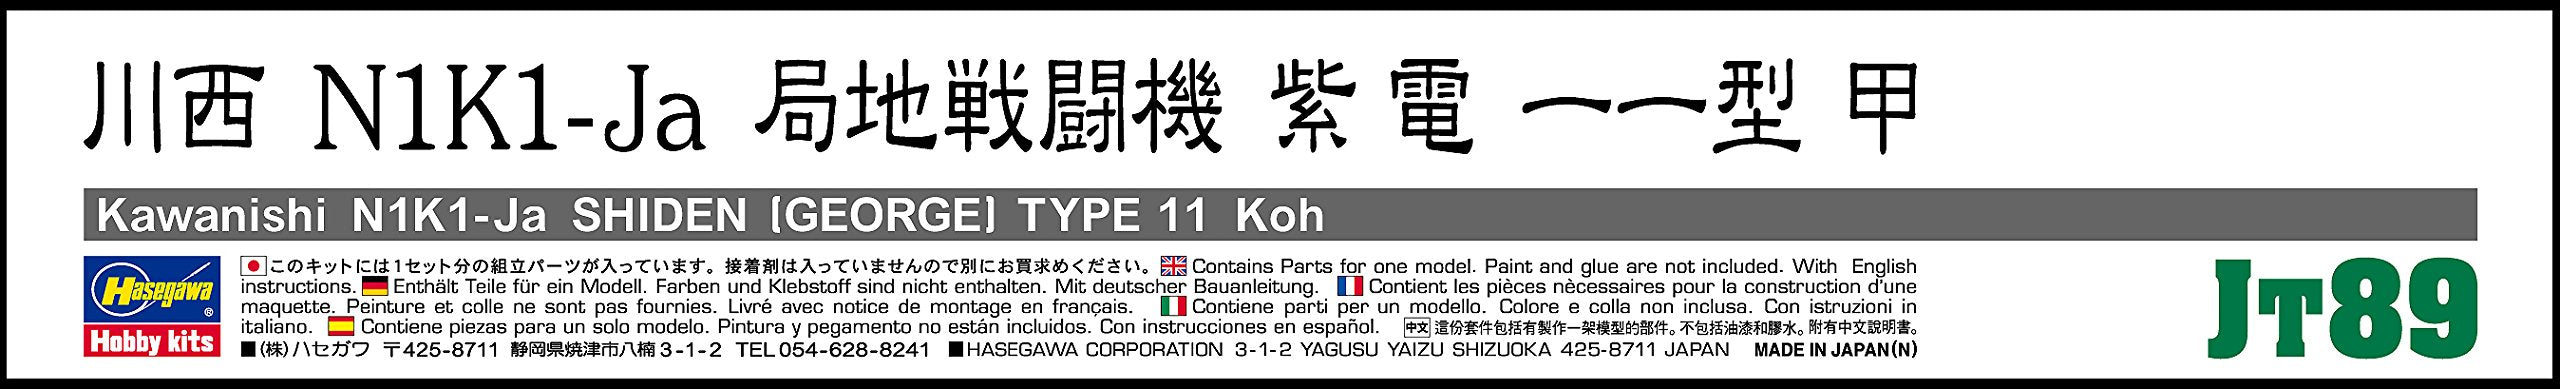 HASEGAWA Jt89 Kawanishi N1K1-Ja Shiden George Kit à l'échelle 1/48